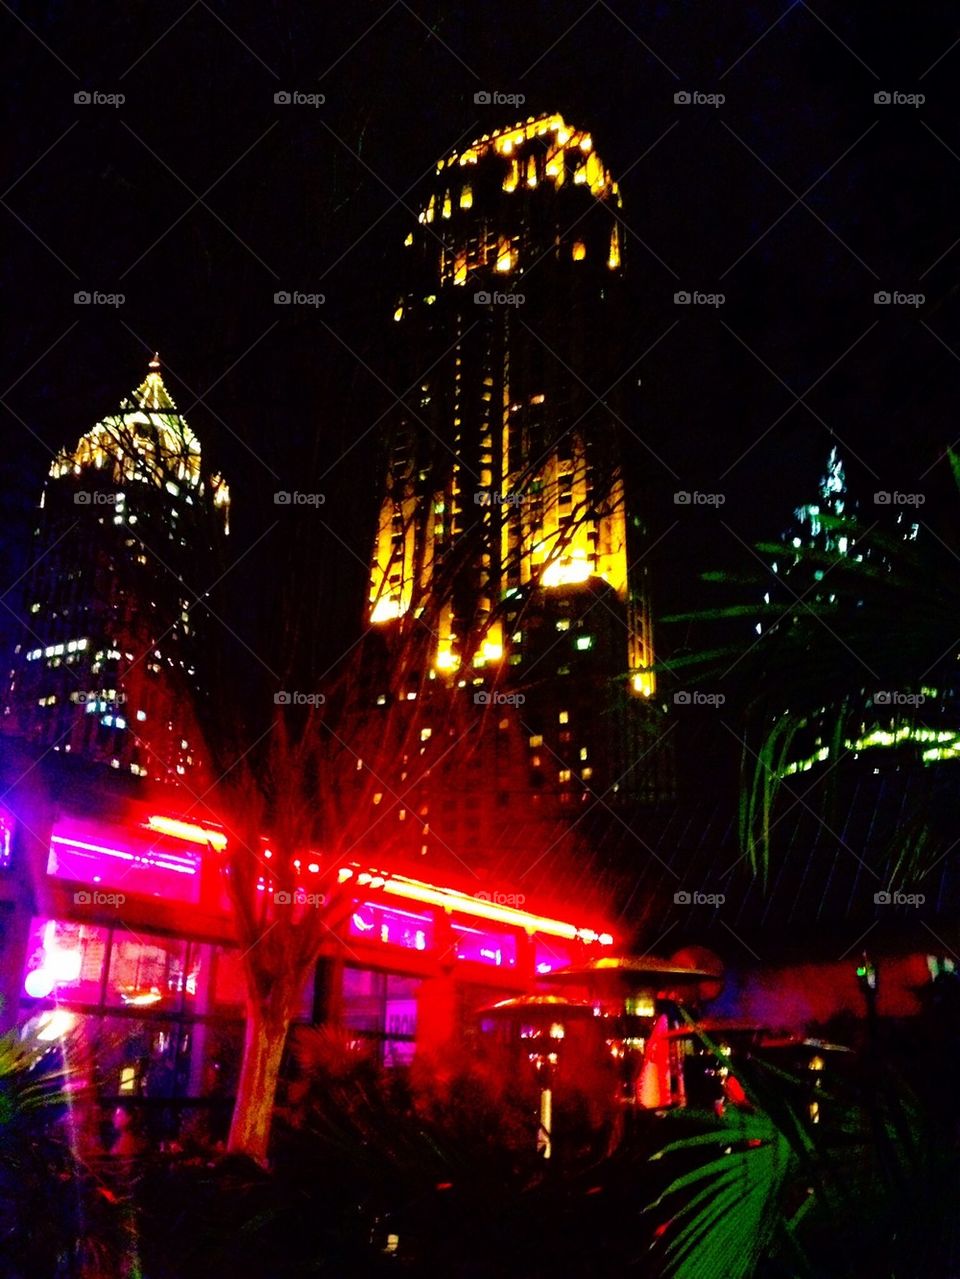 Atlanta night life